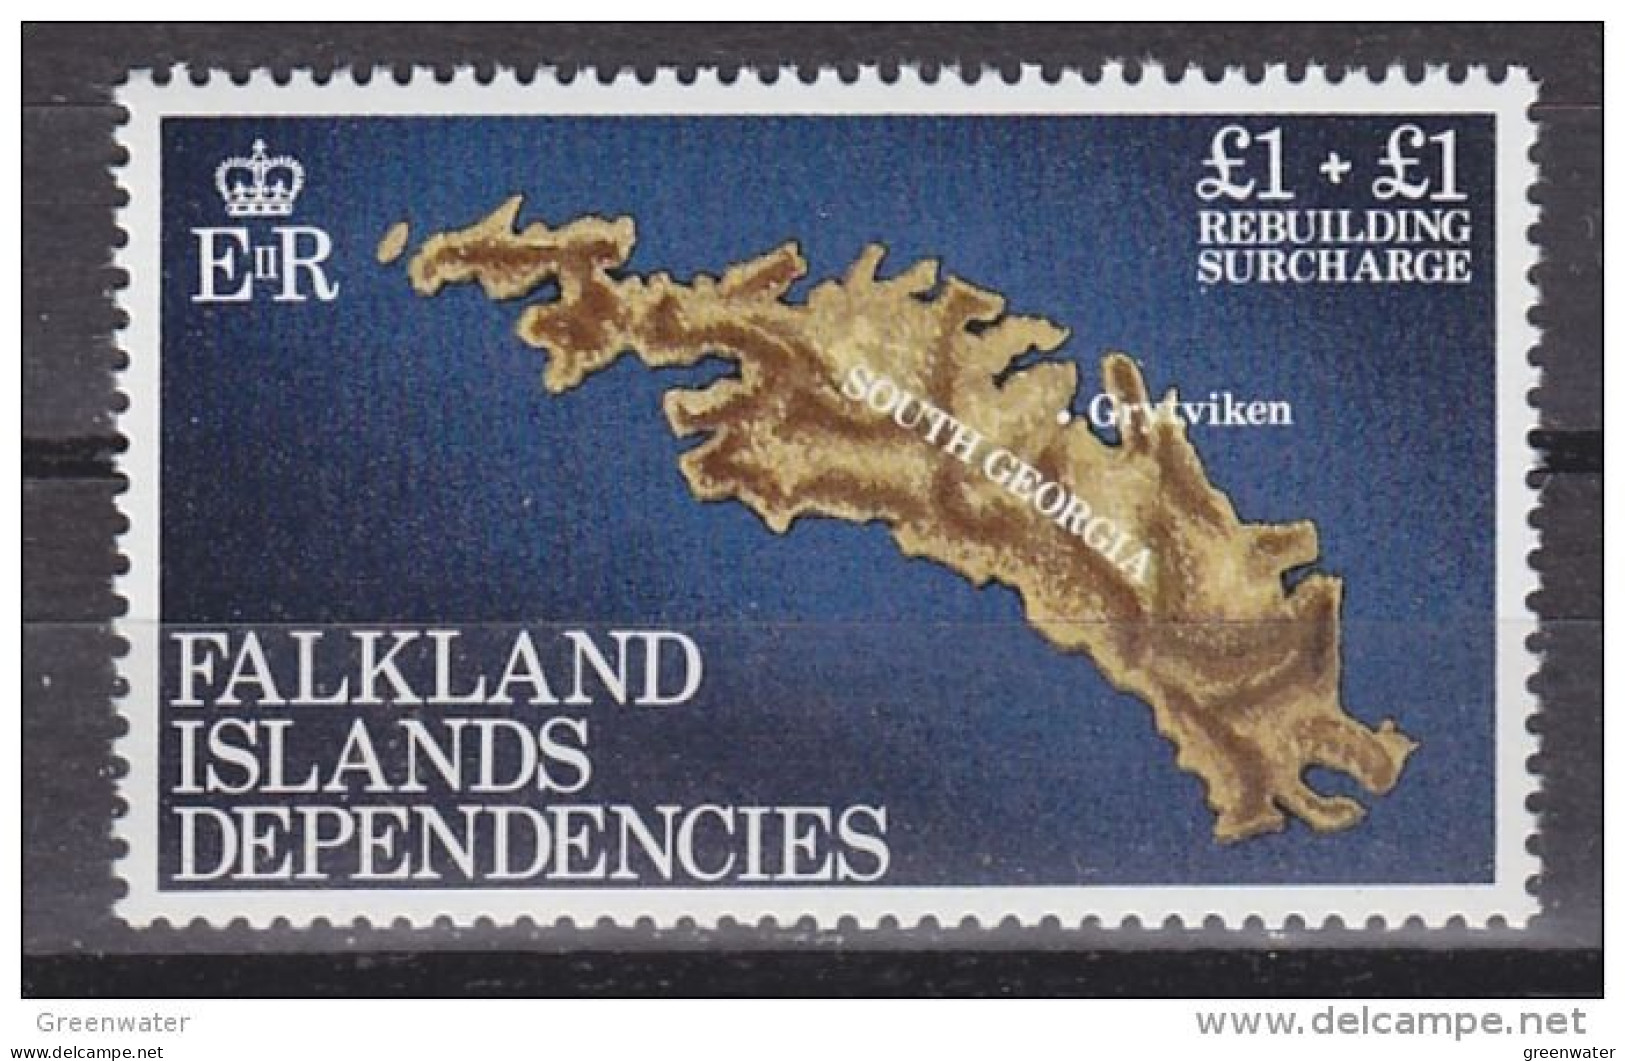 Falkland Islands Dependencies (FID) 1982 Rebuilding Fund 1v  ** Mnh (59843) - Géorgie Du Sud